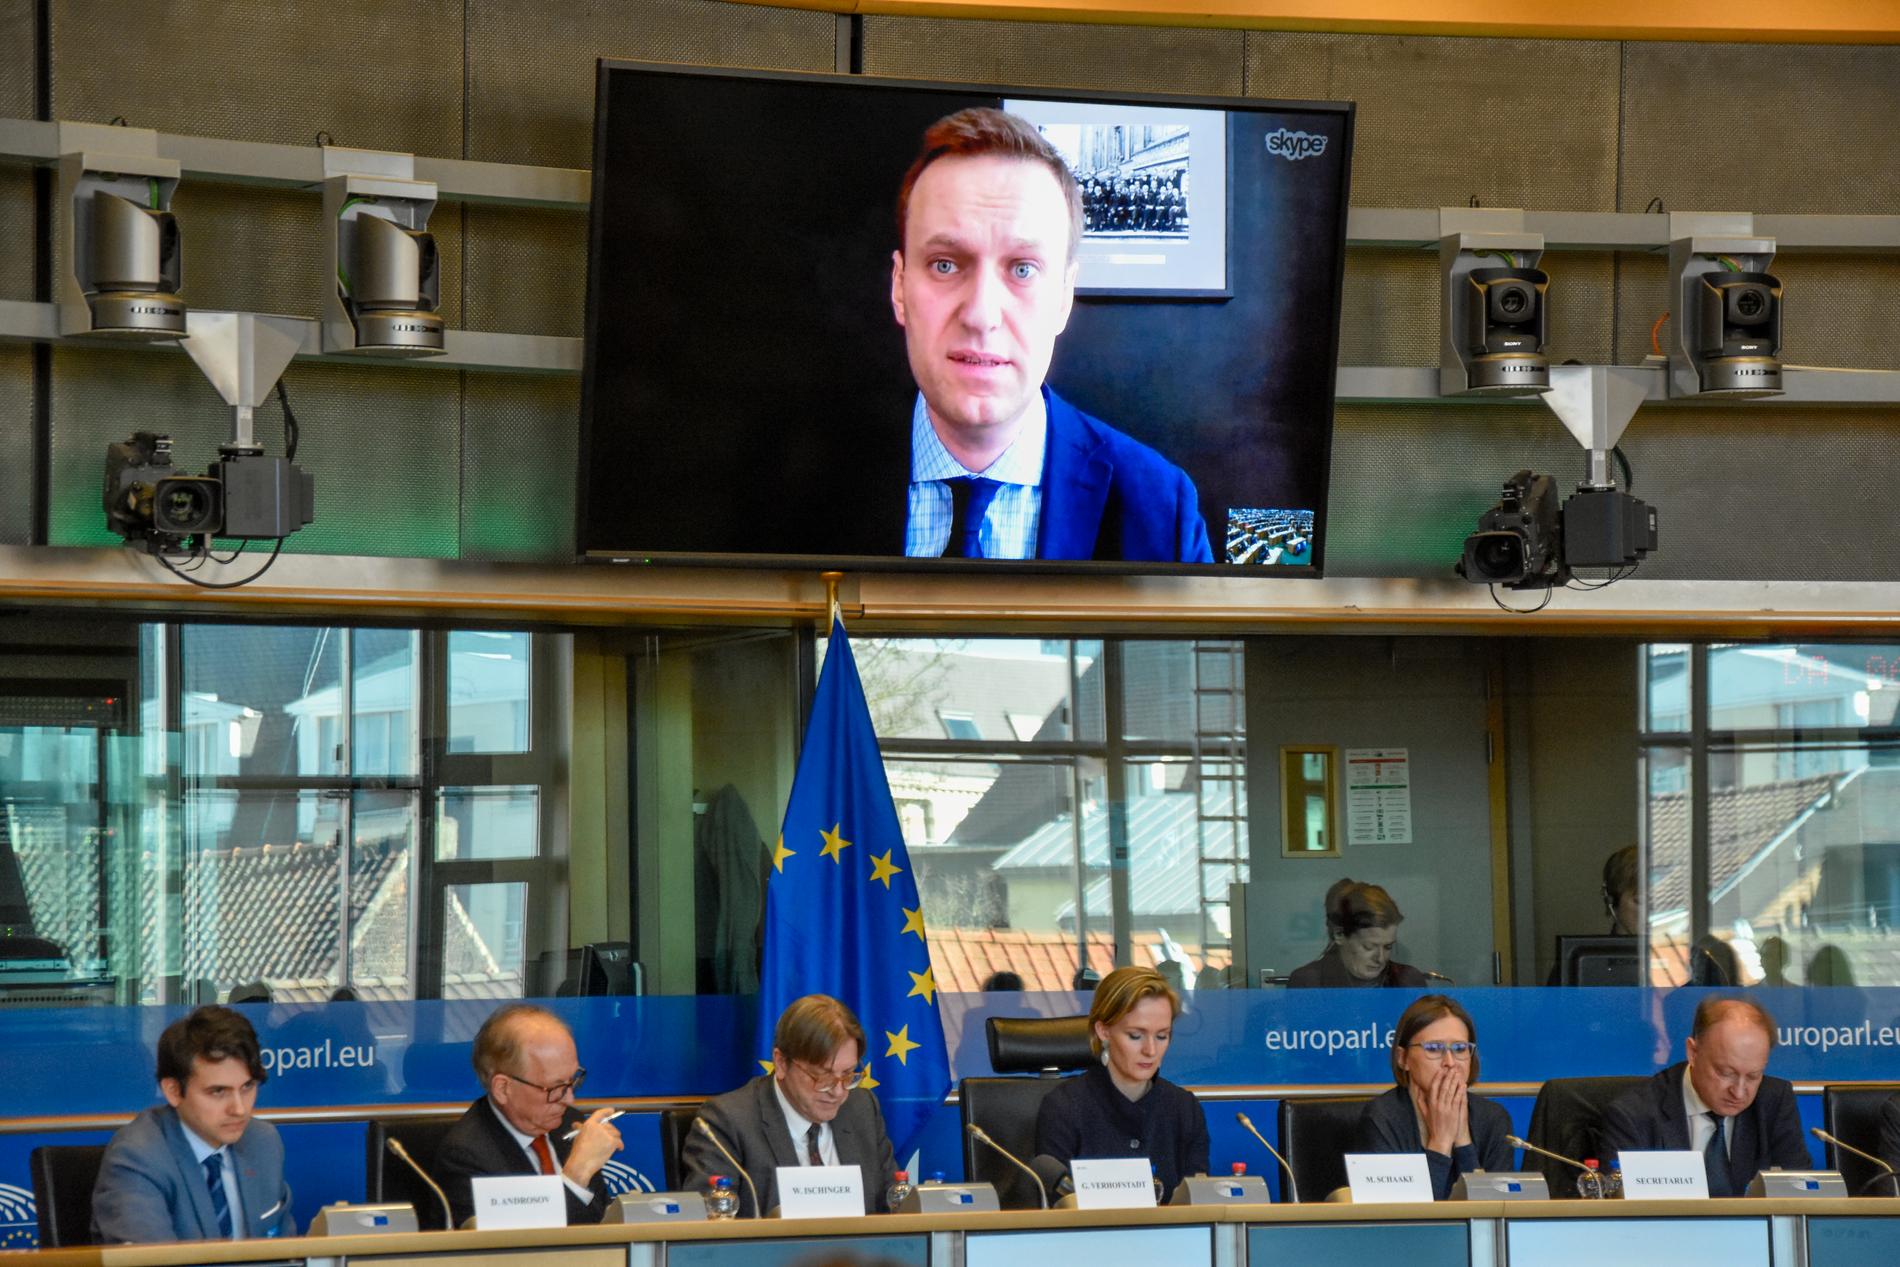 Ryske oppositionspolitikern Aleksej Navalnyj i ett framträdande via videolänk i EU-parlamentet 2018. Arkivbild.